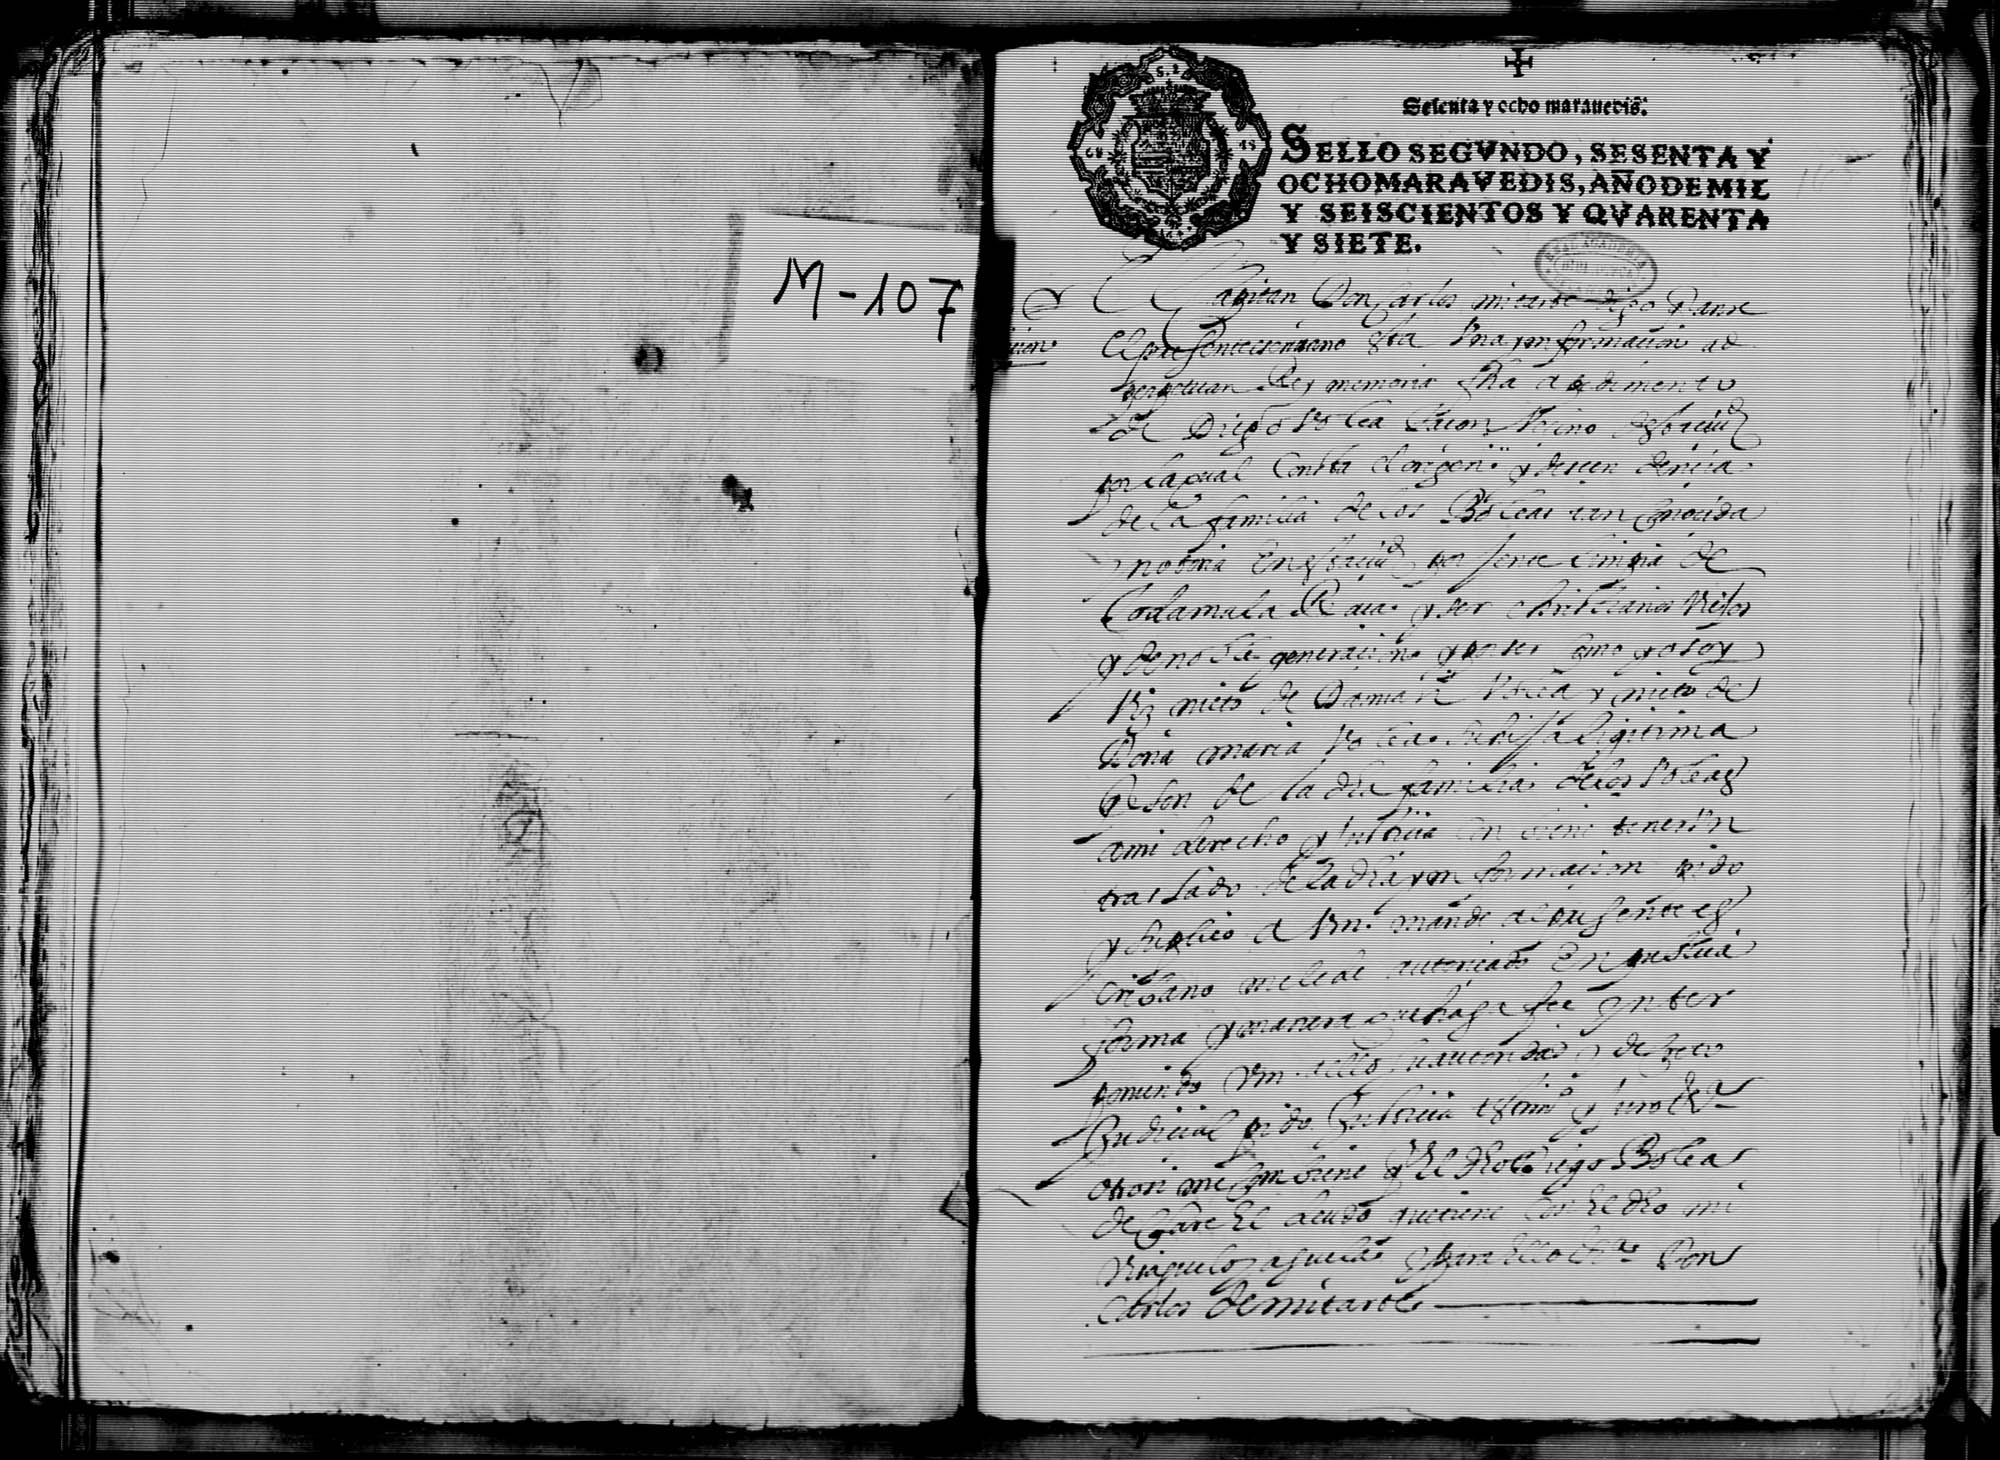 Información testifical de la genealogía y nobleza de Diego Boleas Tacón, vecino de Cartagena